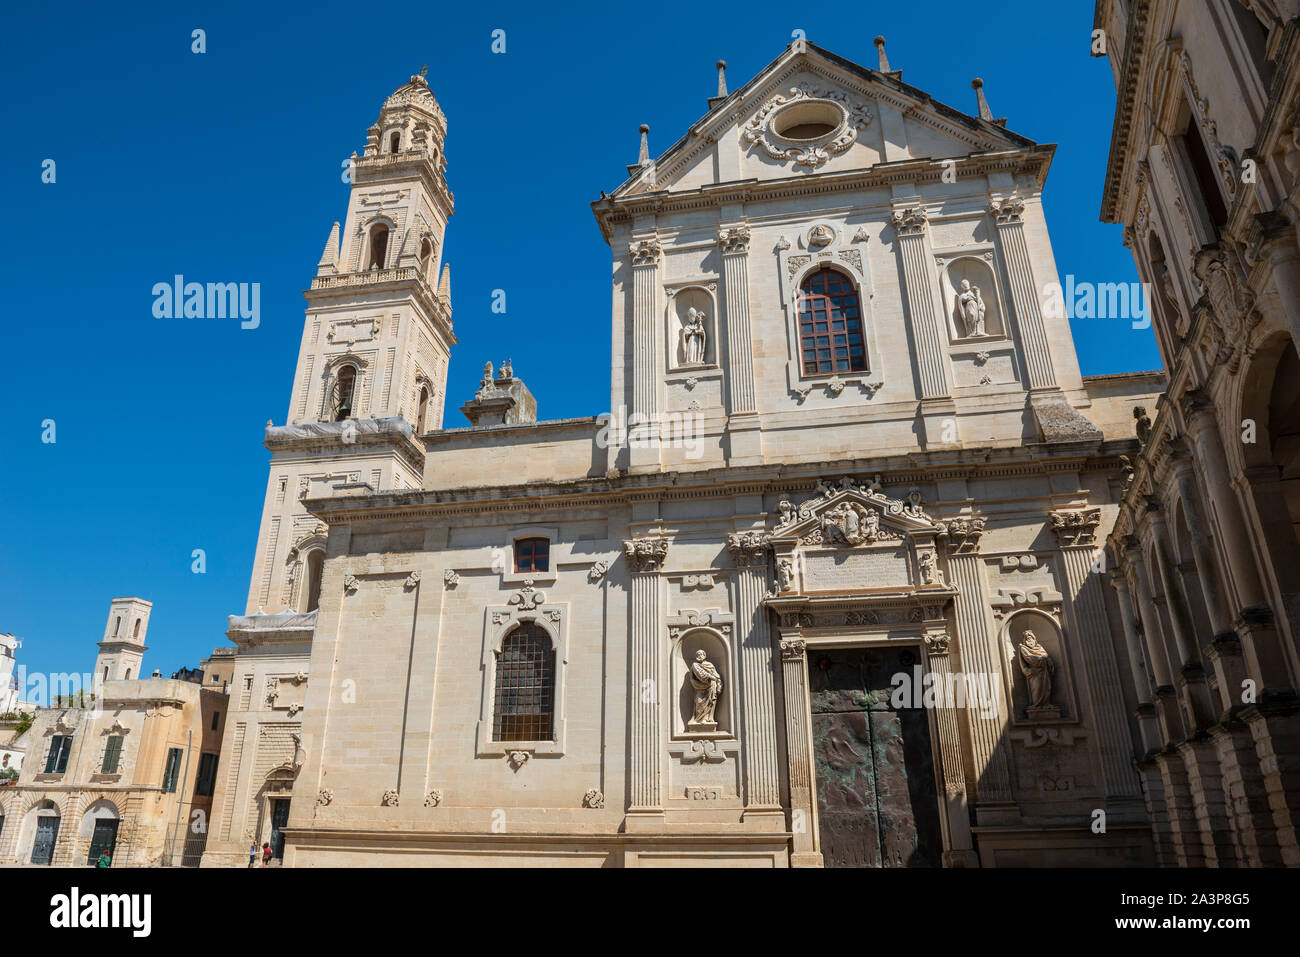 Fachada Lateral de la Cattedrale di Santa Maria Assunta (Iglesia de Santa María de la Asunción) en la Piazza del Duomo en Lecce, Apulia (Puglia) del sur de Italia Foto de stock